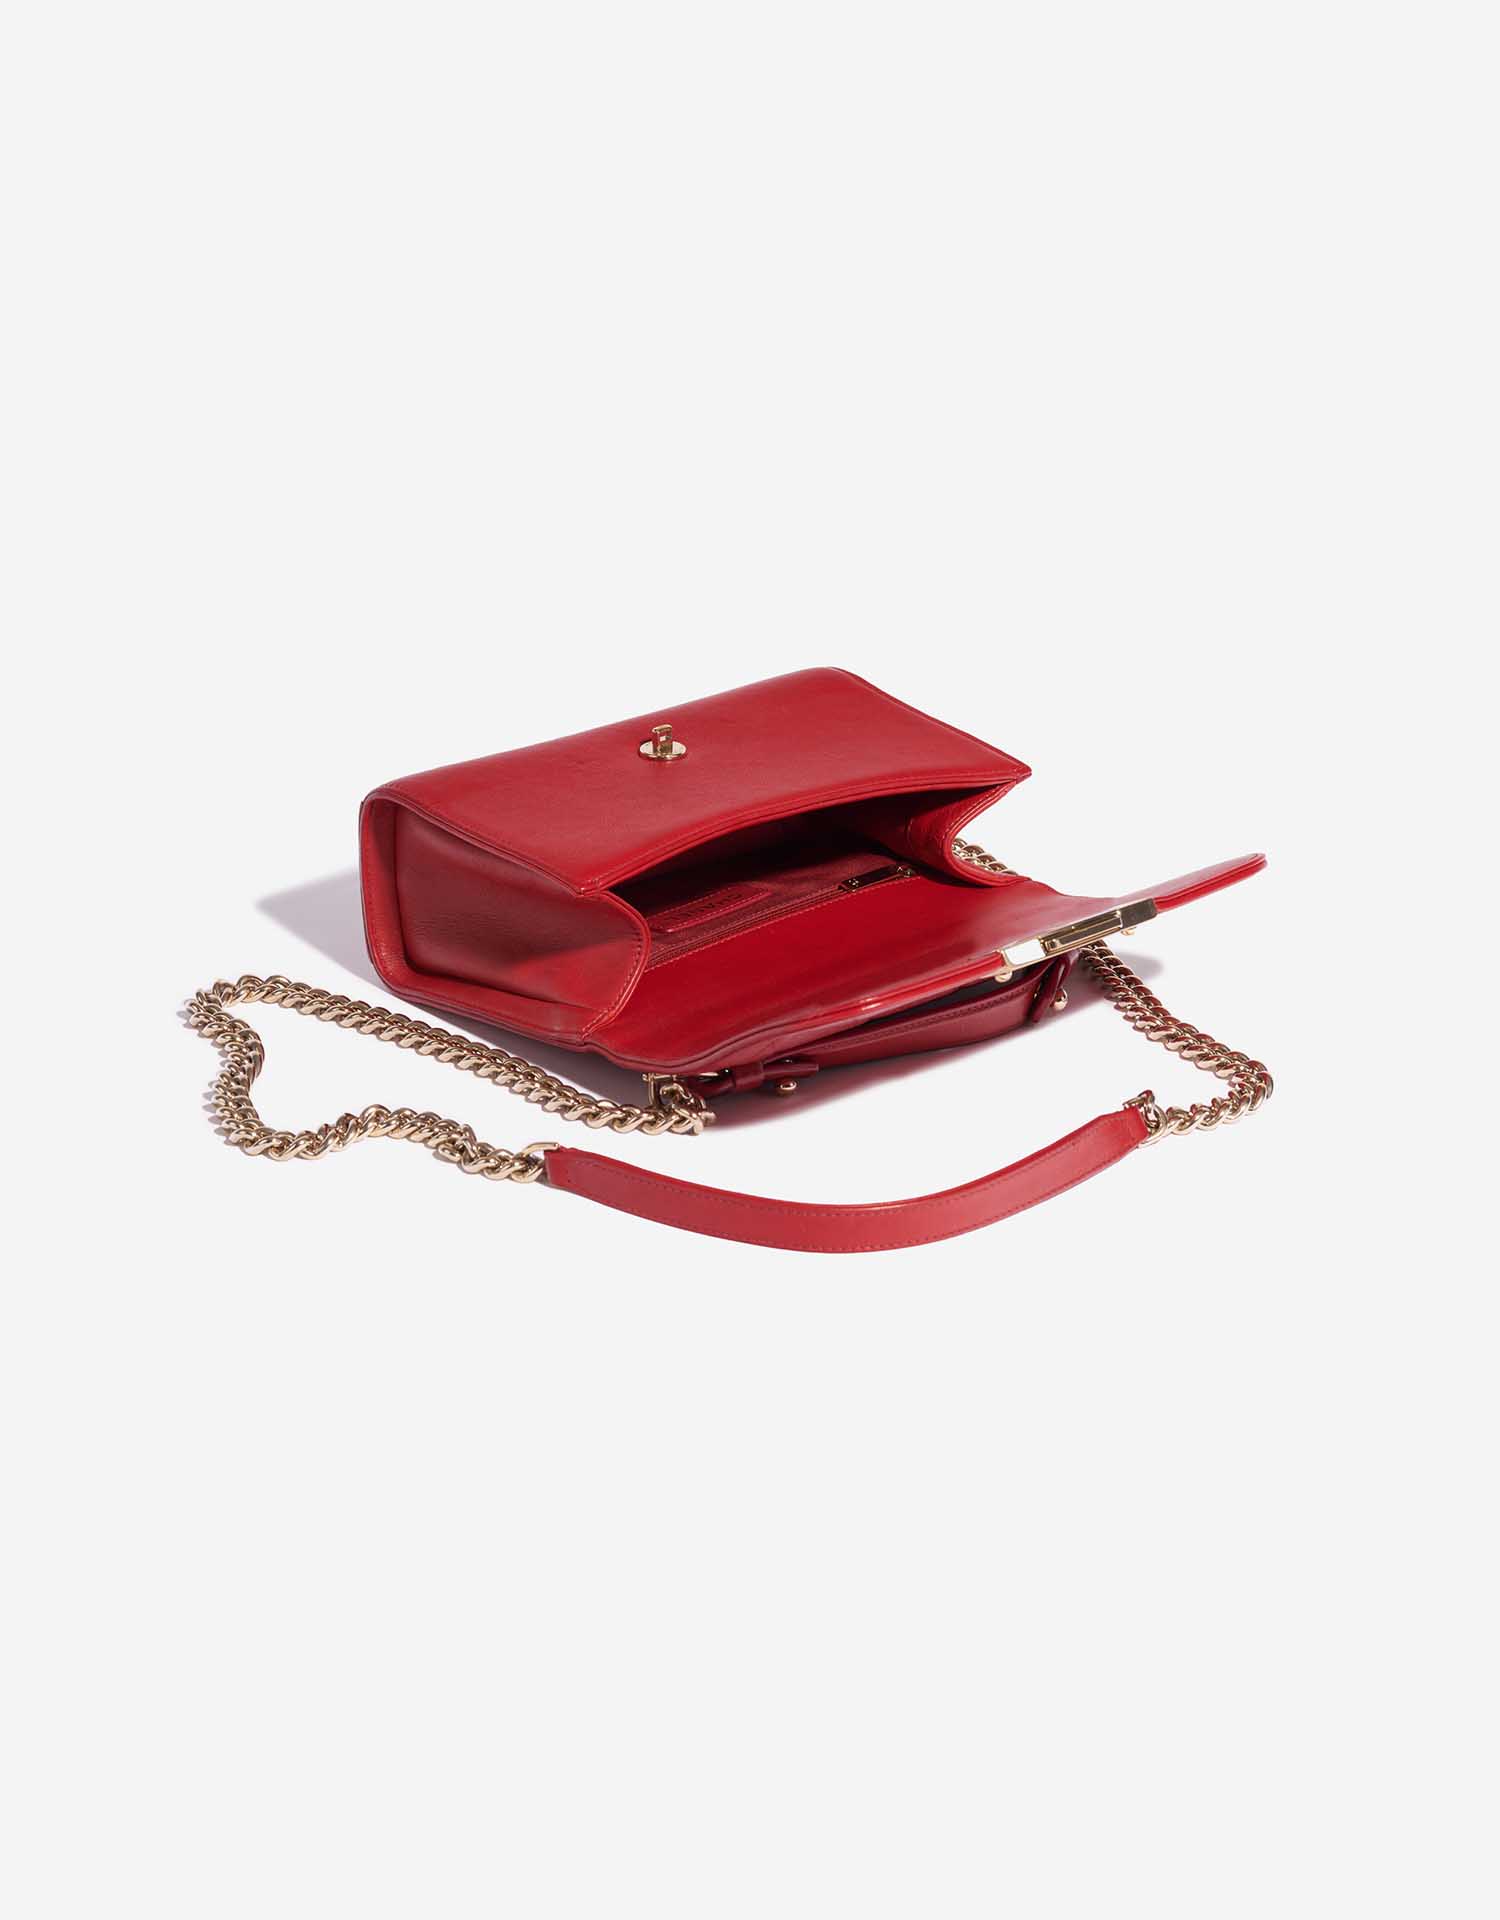 Pre-owned Chanel Tasche Flap Bag Handle Lammleder Red Red Inside | Verkaufen Sie Ihre Designer-Tasche auf Saclab.com